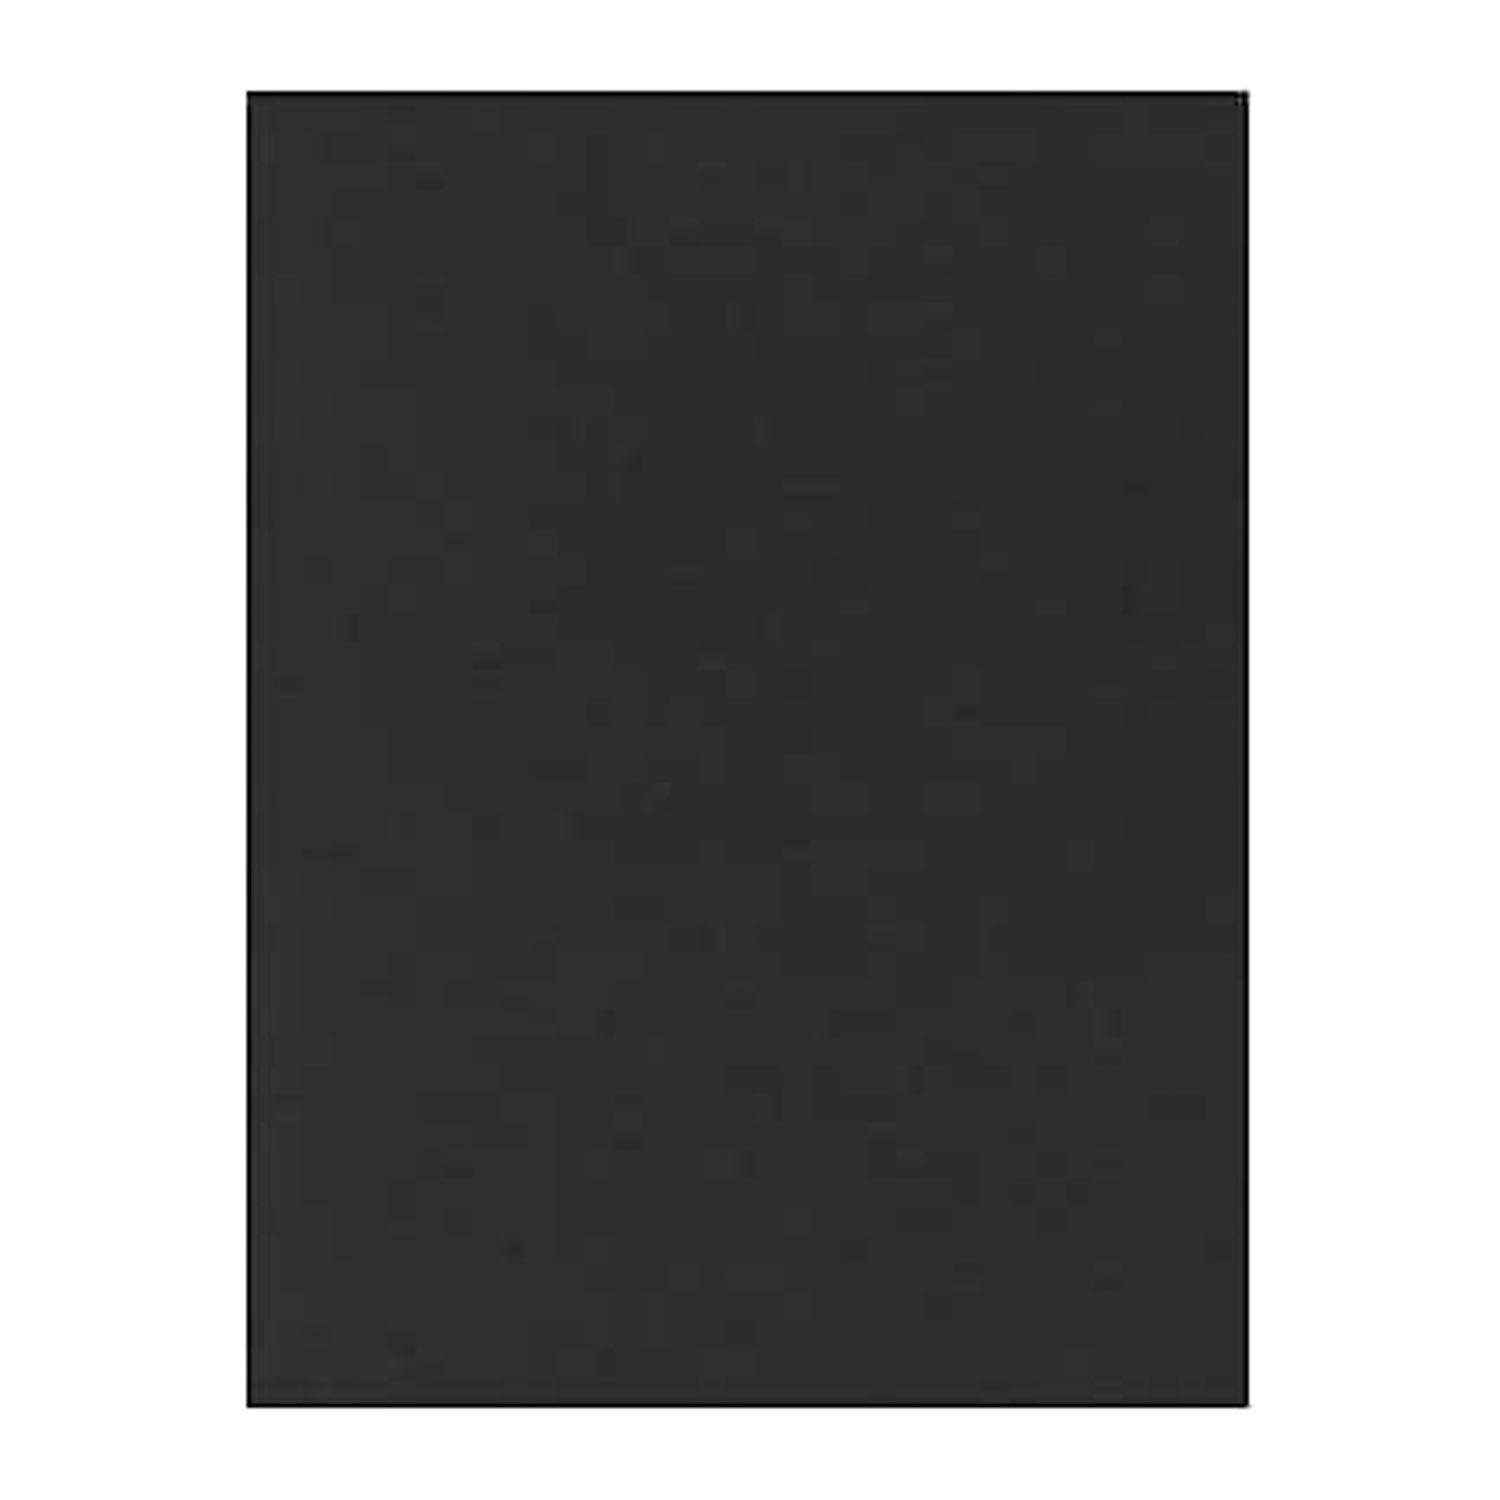 Buy Dark Green Linen 100lb. 11x17 Cardstock - Quality Paper